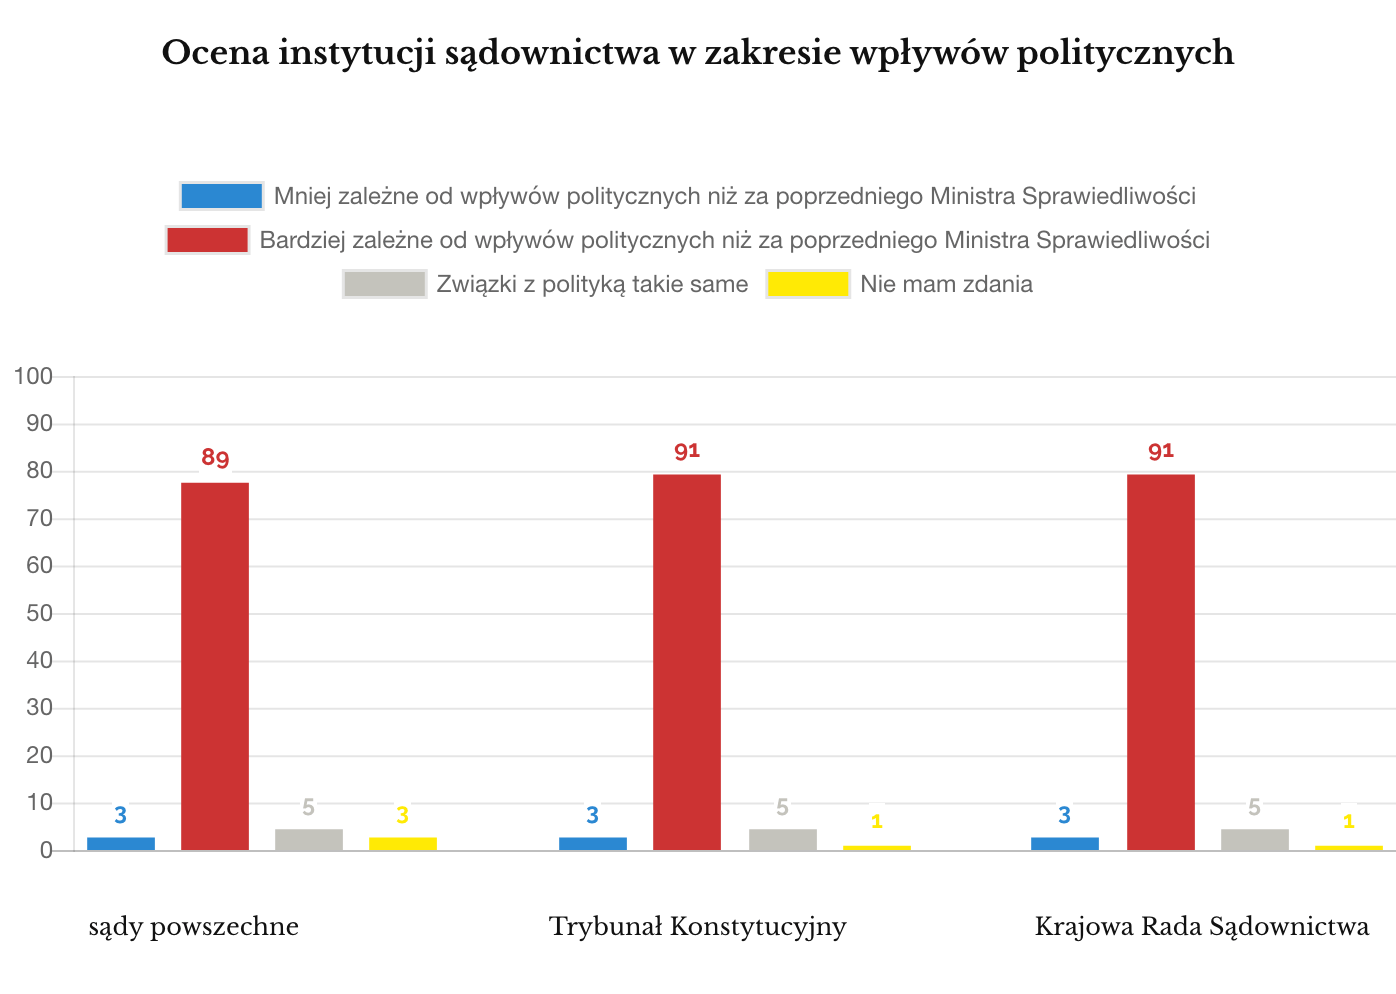 Ocena wybranych instytucji sądownictwa w Polsce w zakresie wpływów politycznych